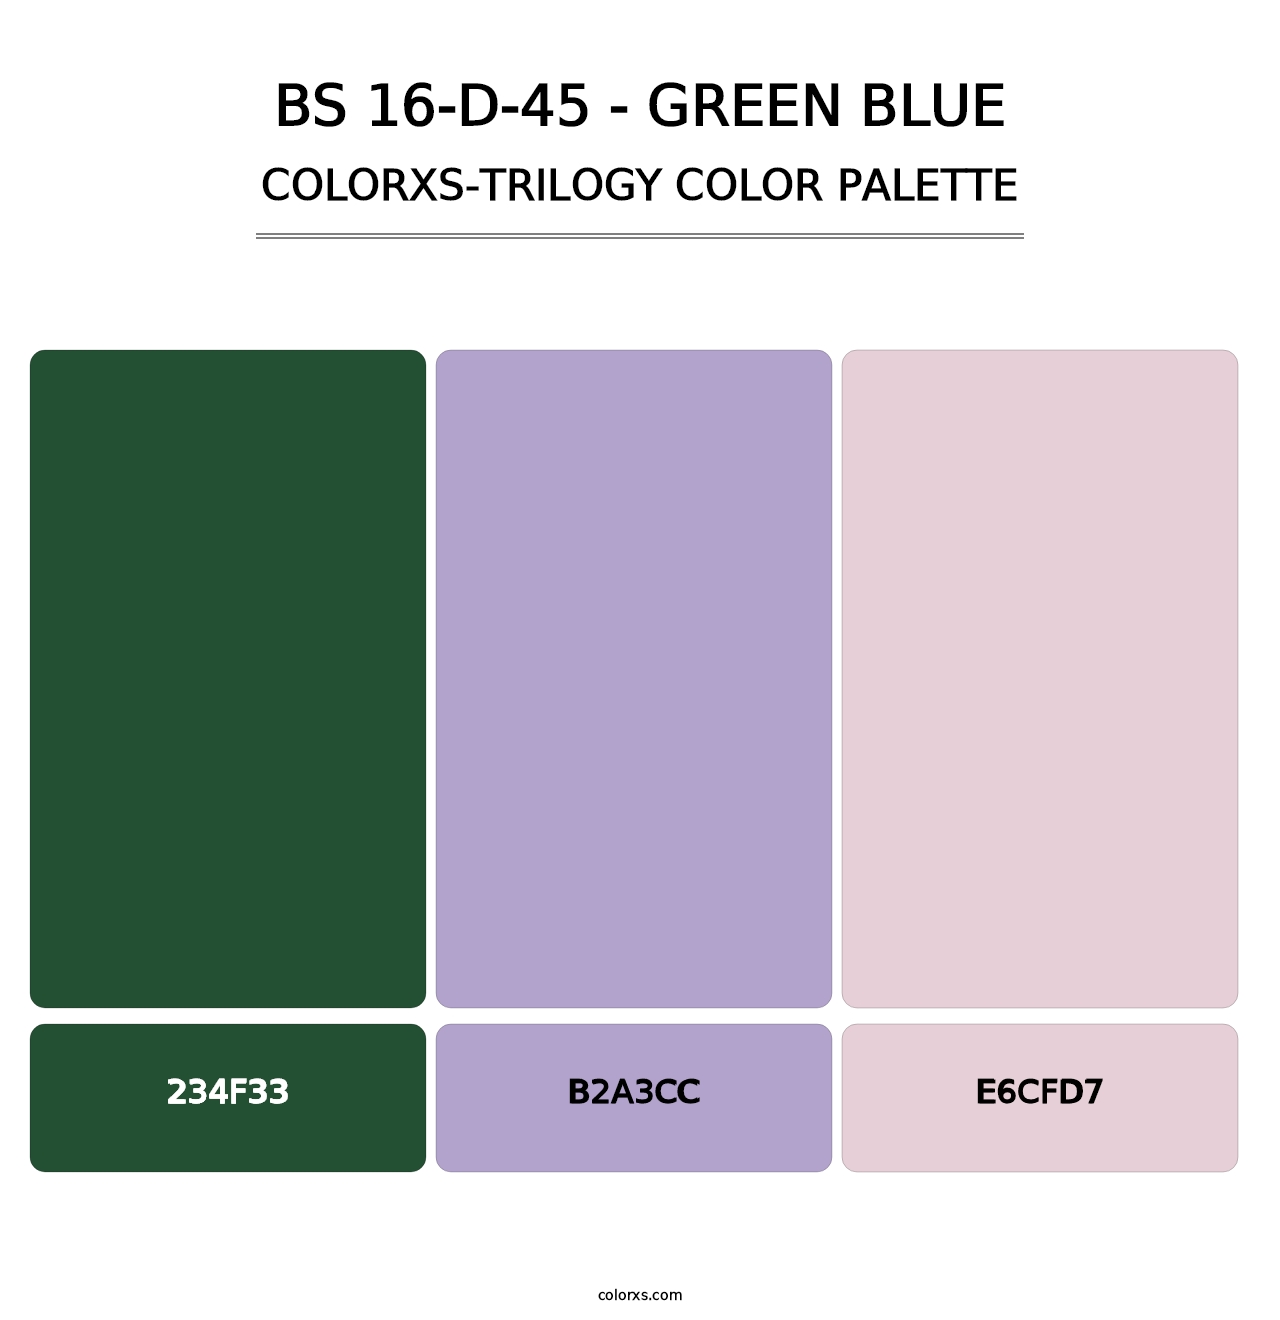 BS 16-D-45 - Green Blue - Colorxs Trilogy Palette